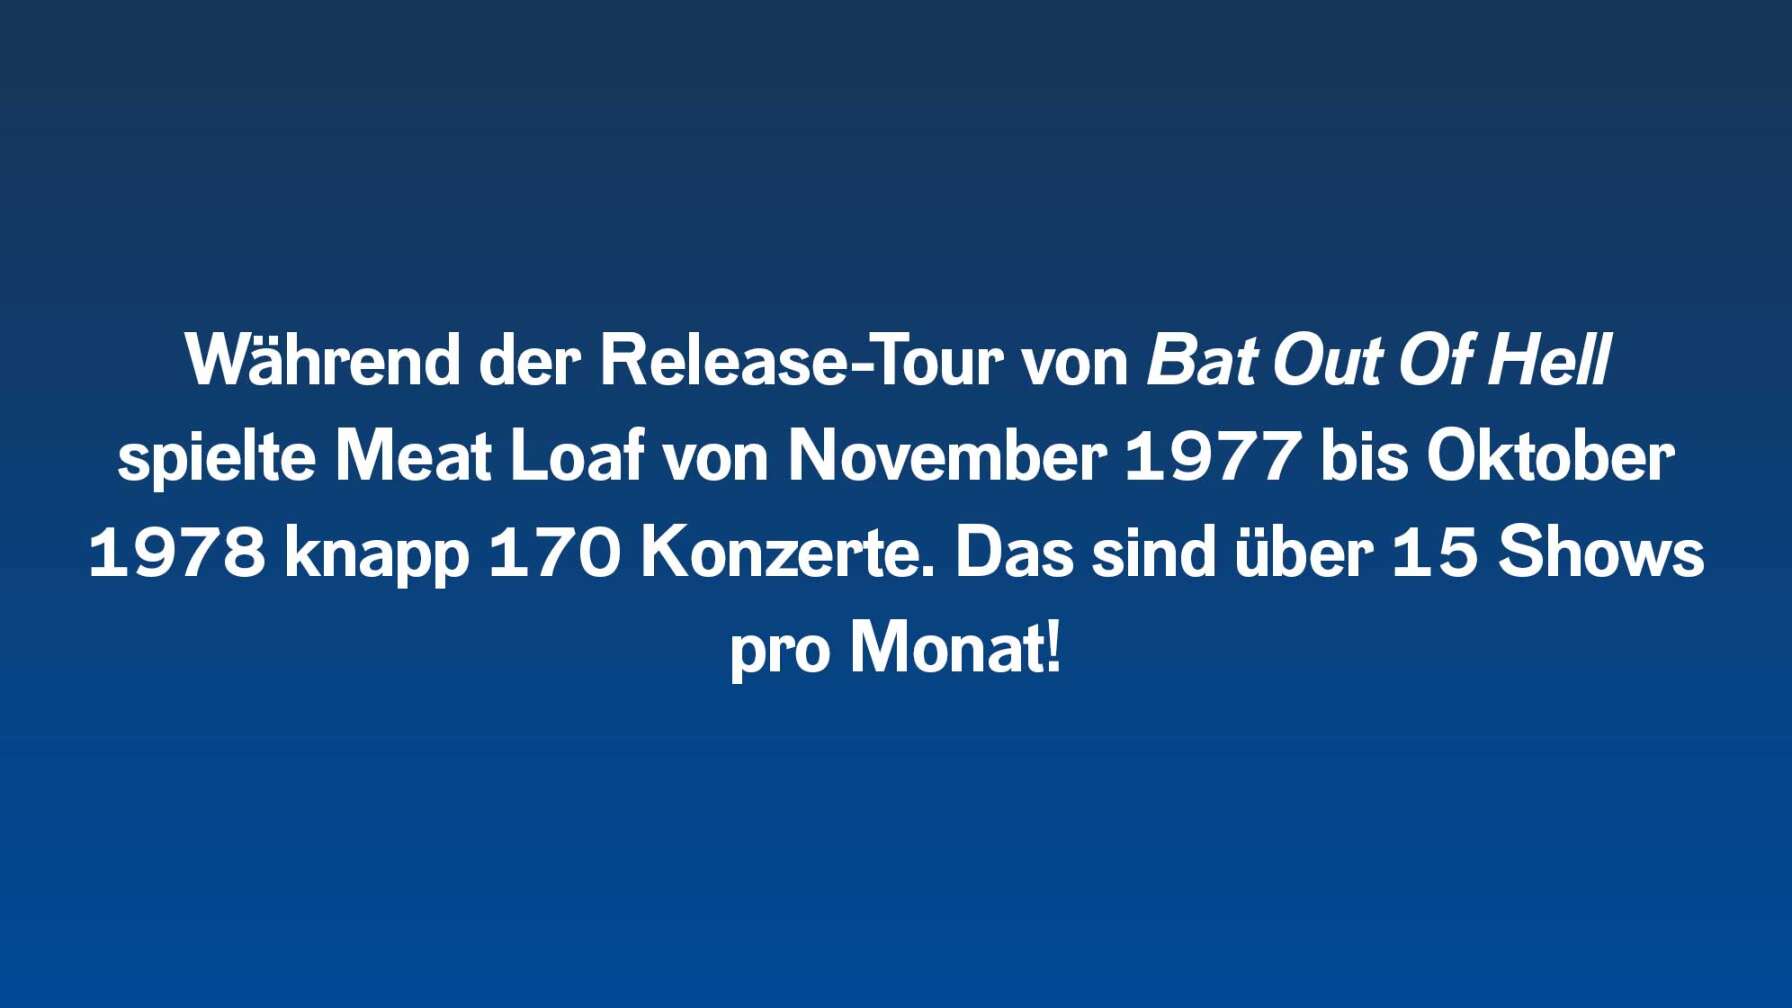 Während der Release-Tour von Bat Out Of Hell spielte Meat Loaf von November 1977 bis Oktober 1978 knapp 170 Konzerte. Das sind über 15 Shows pro Monat!